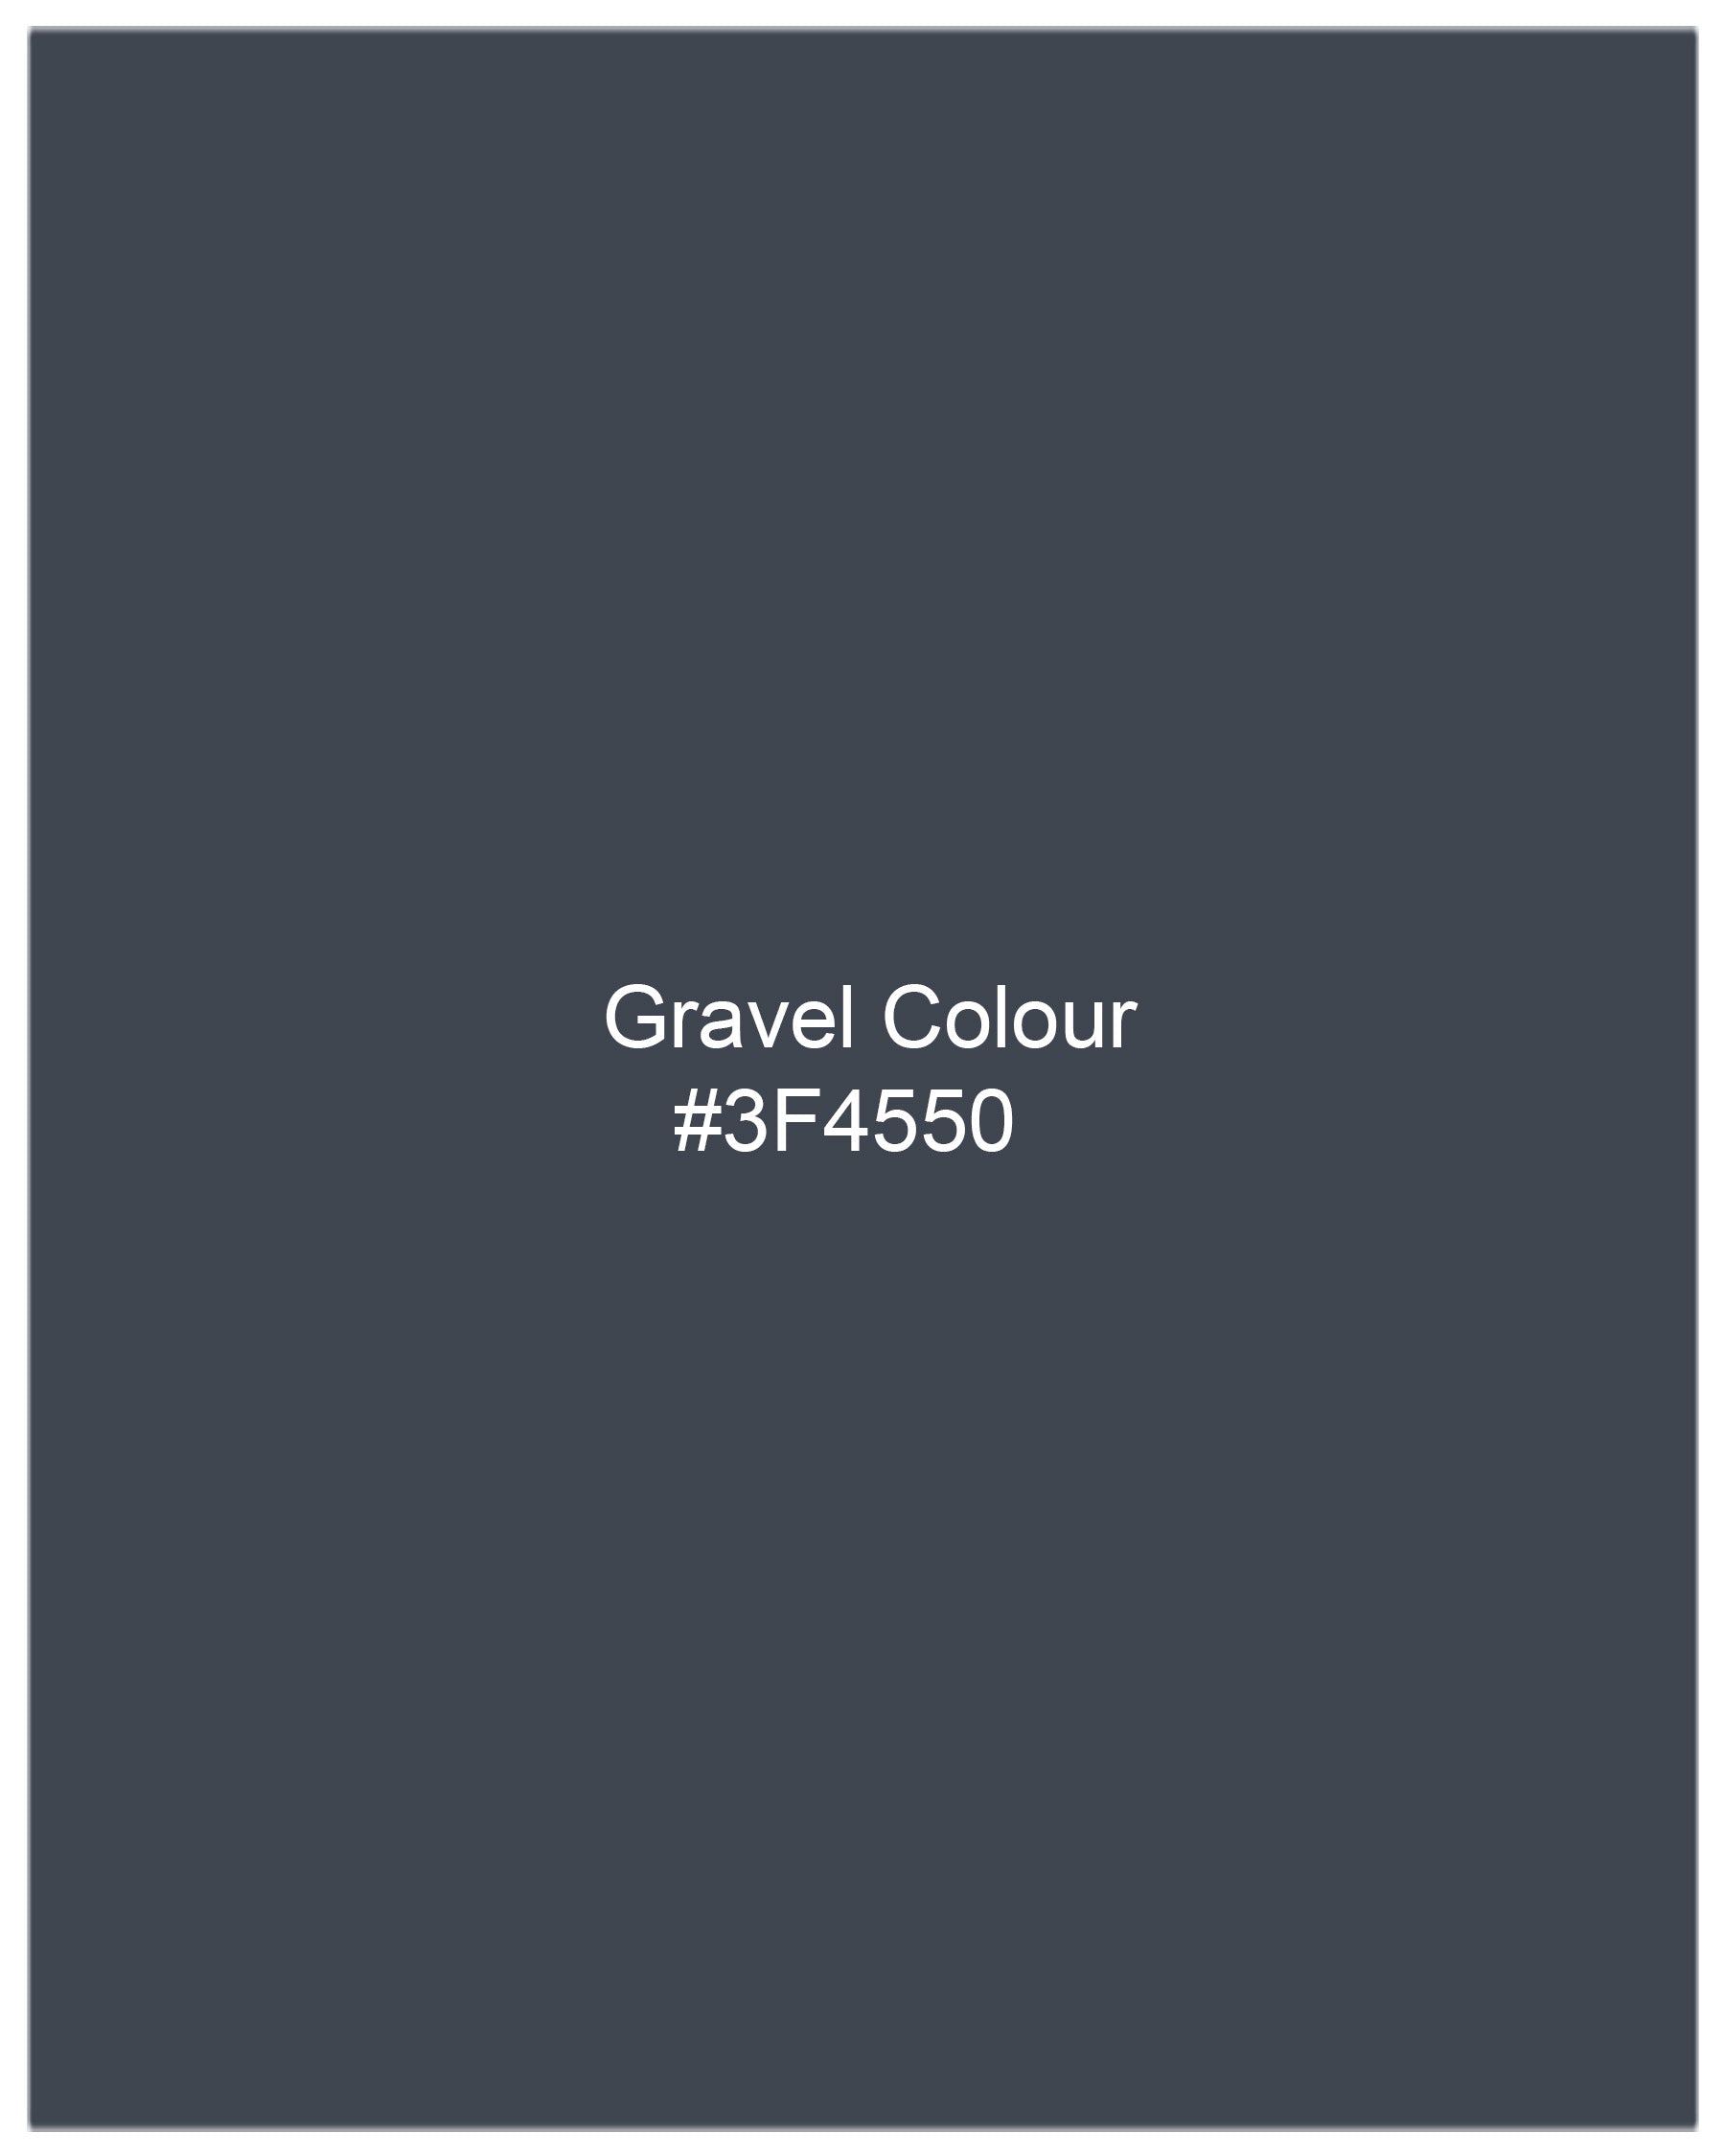 Gravel Gray Flannel Premium Cotton Designer Over Shirt 7766-OS-P141-38, 7766-OS-P141-39, 7766-OS-P141-40,  7766-OS-P141-42,  7766-OS-P141-44,  7766-OS-P141-46,  7766-OS-P141-48,  7766-OS-P141-50,  7766-OS-P141-52